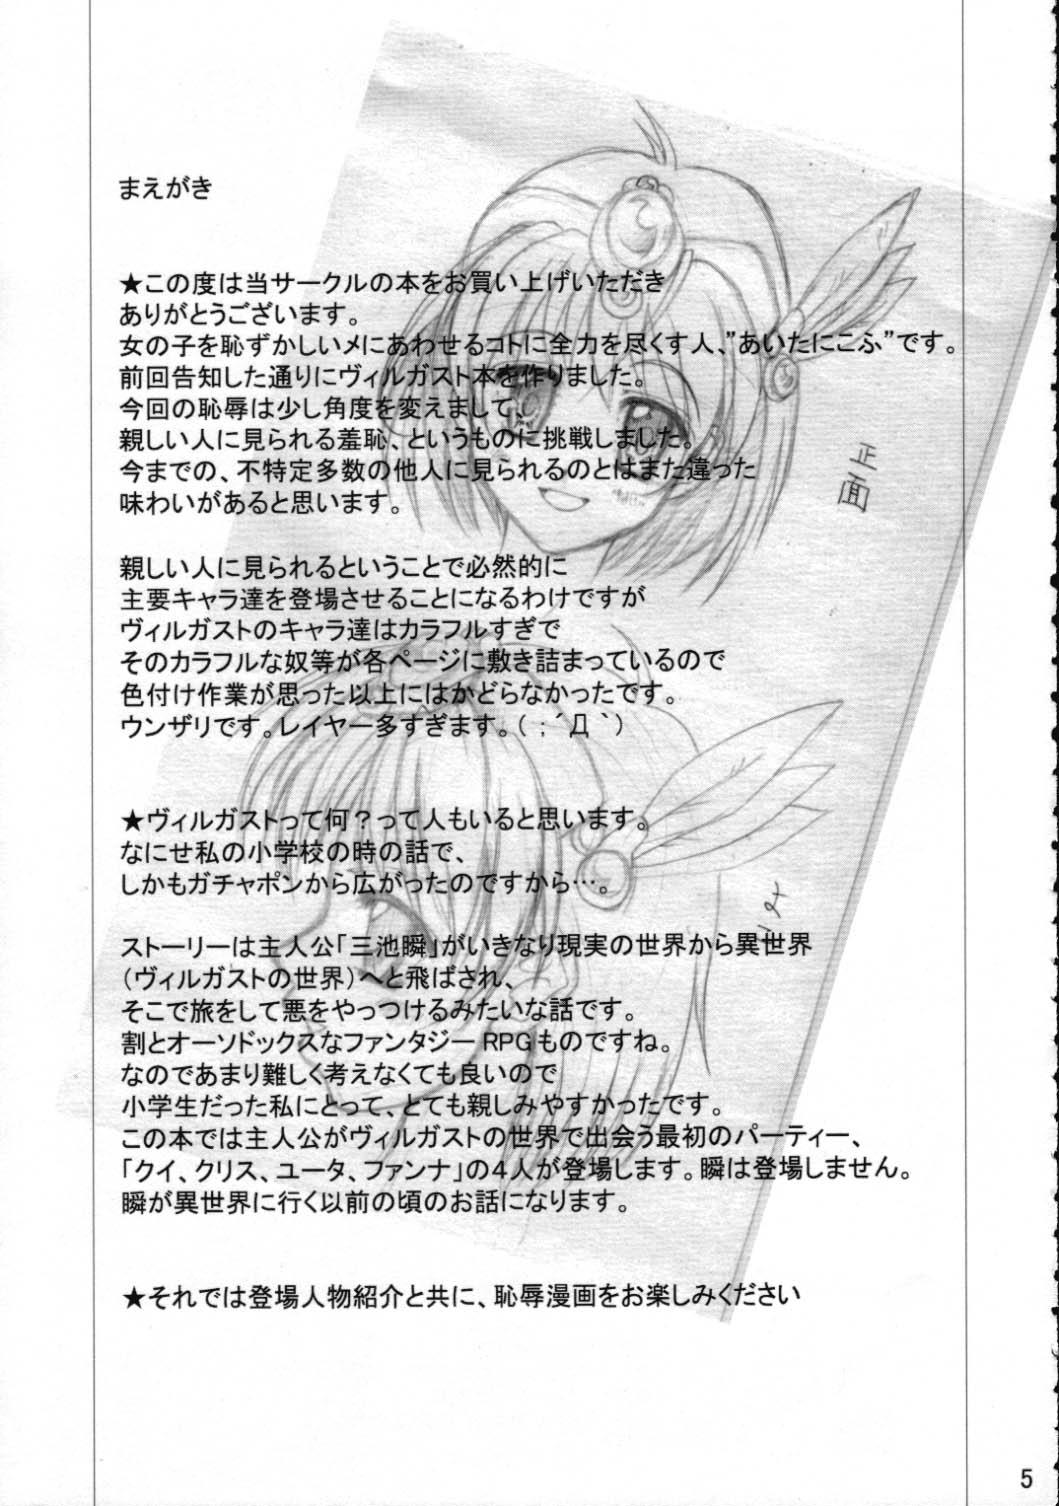 Blowjob Toraware no Shoujo - Kouryuu densetsu villgust Calle - Page 4